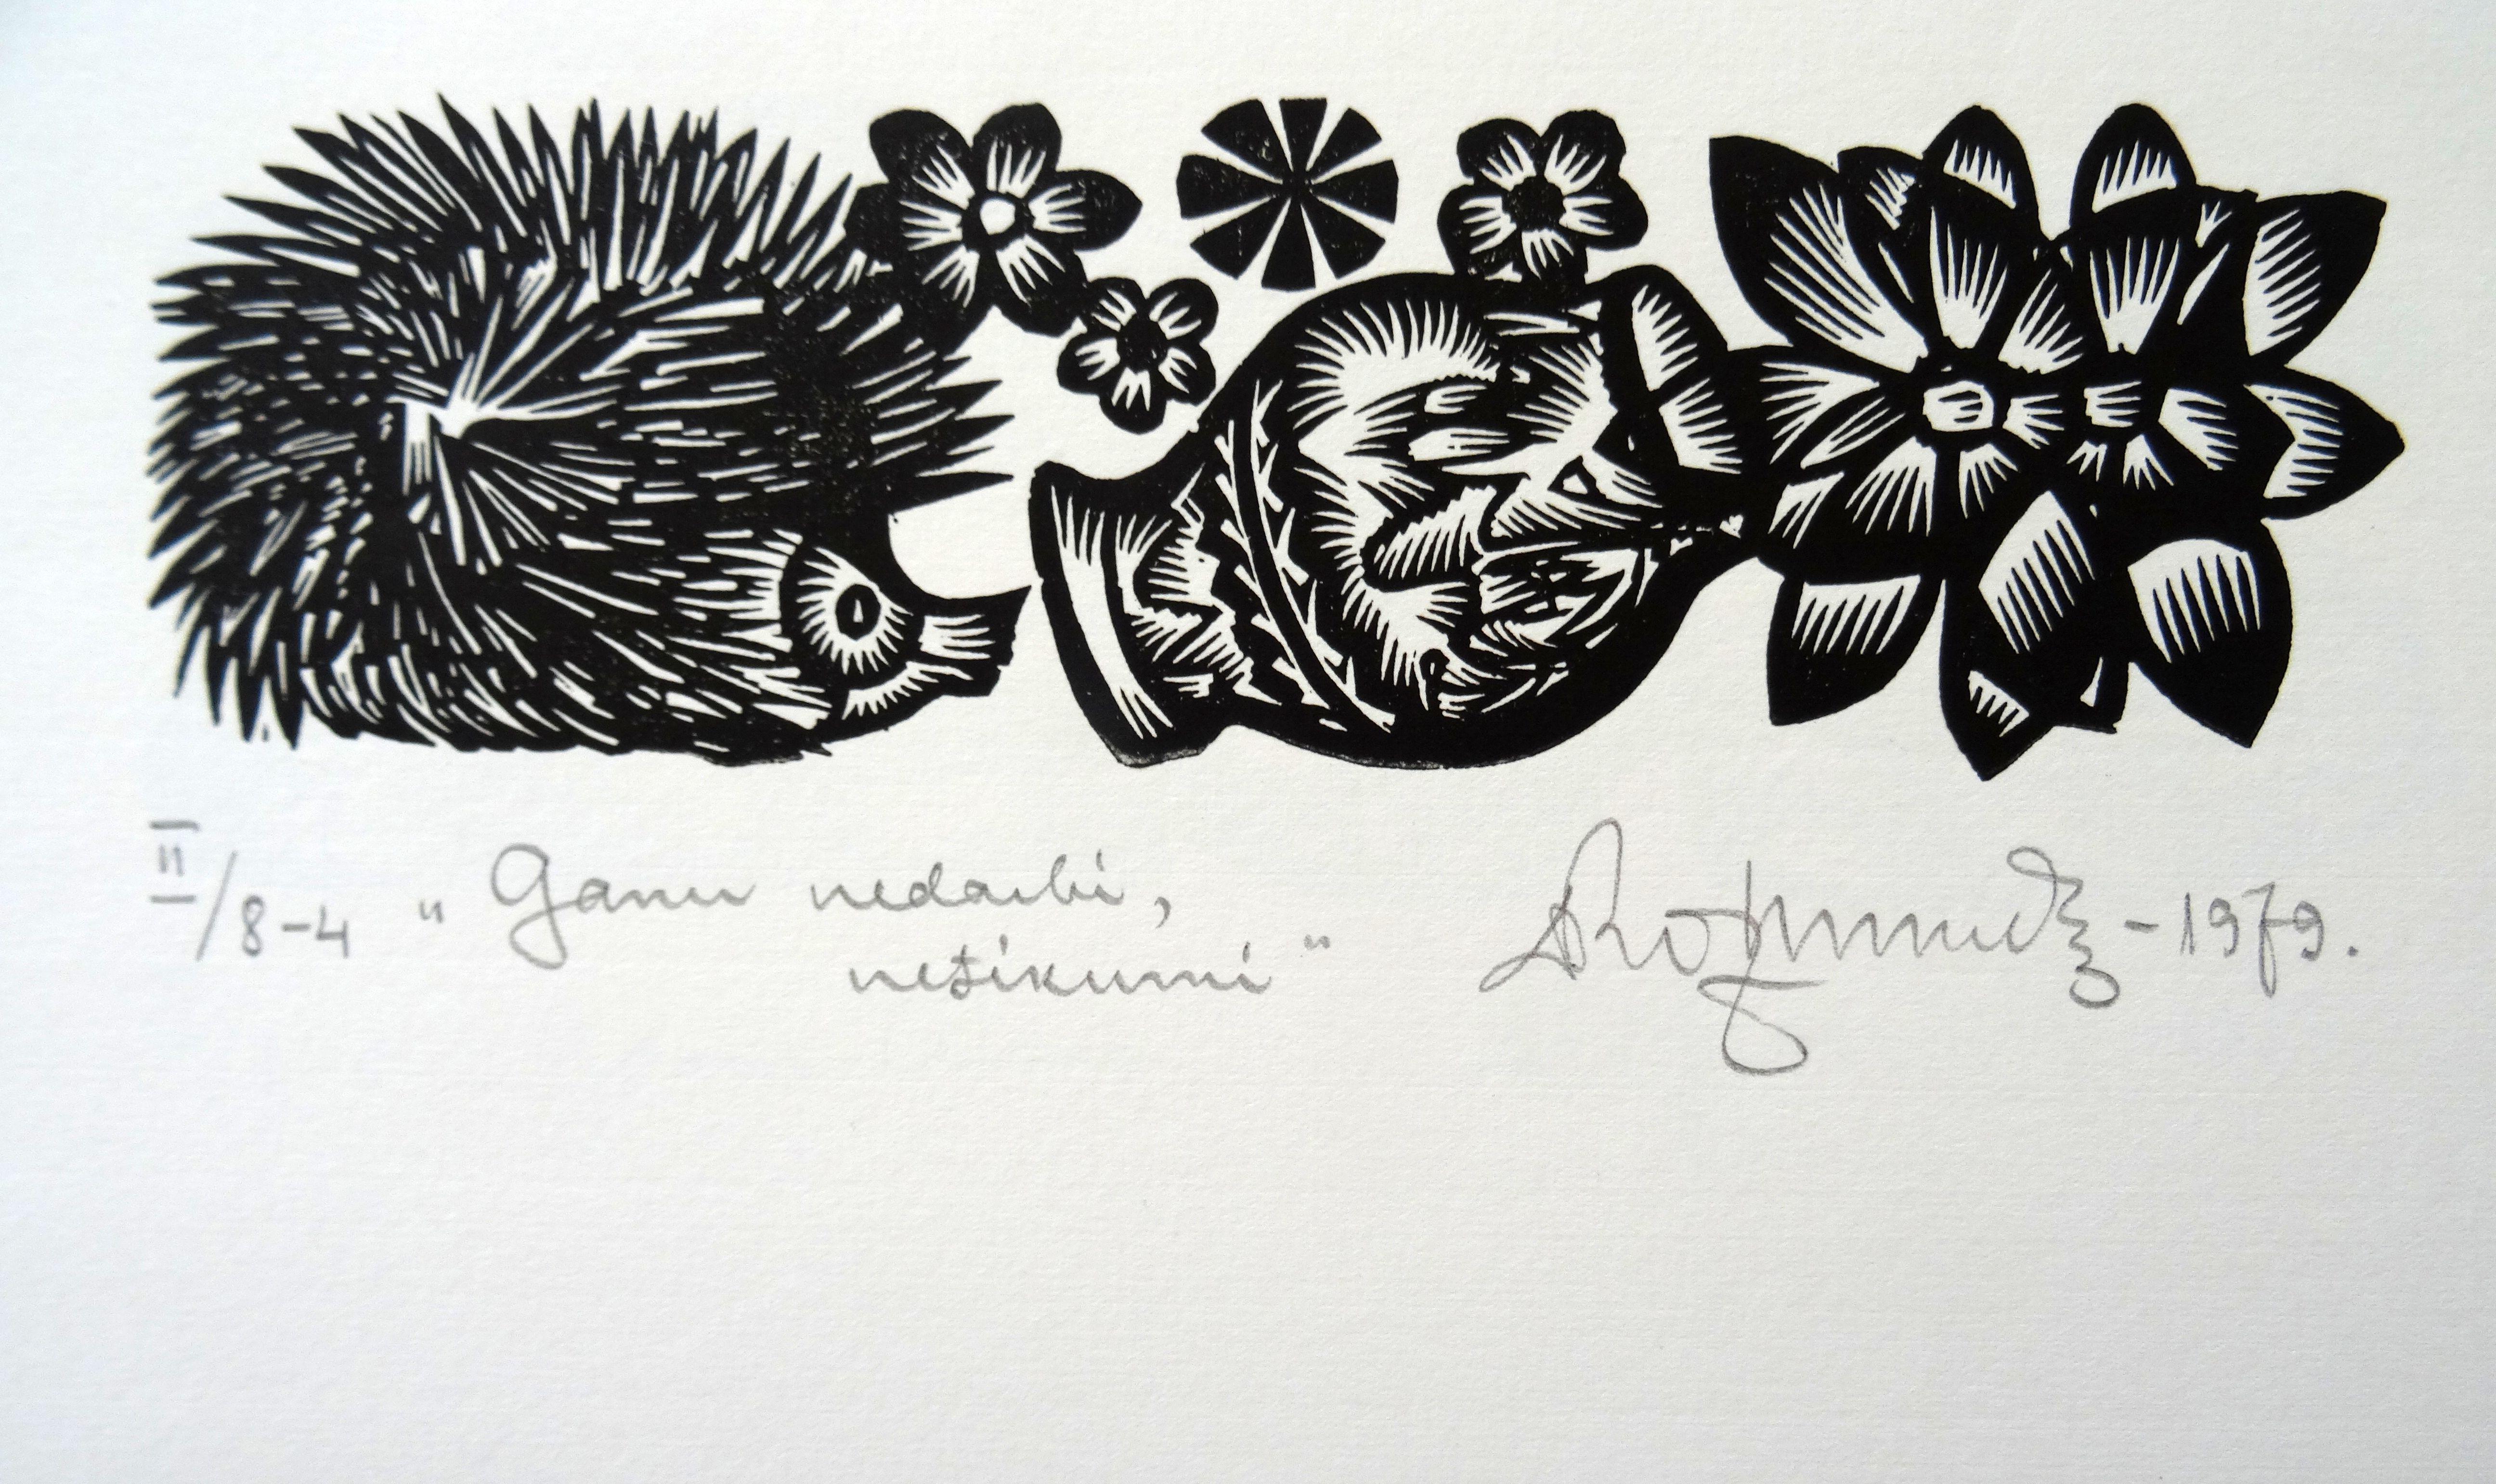 Herdsman's Missgeschicke, Missgeschicke. 1979. Papier, Linolschnitt, 19x33 cm